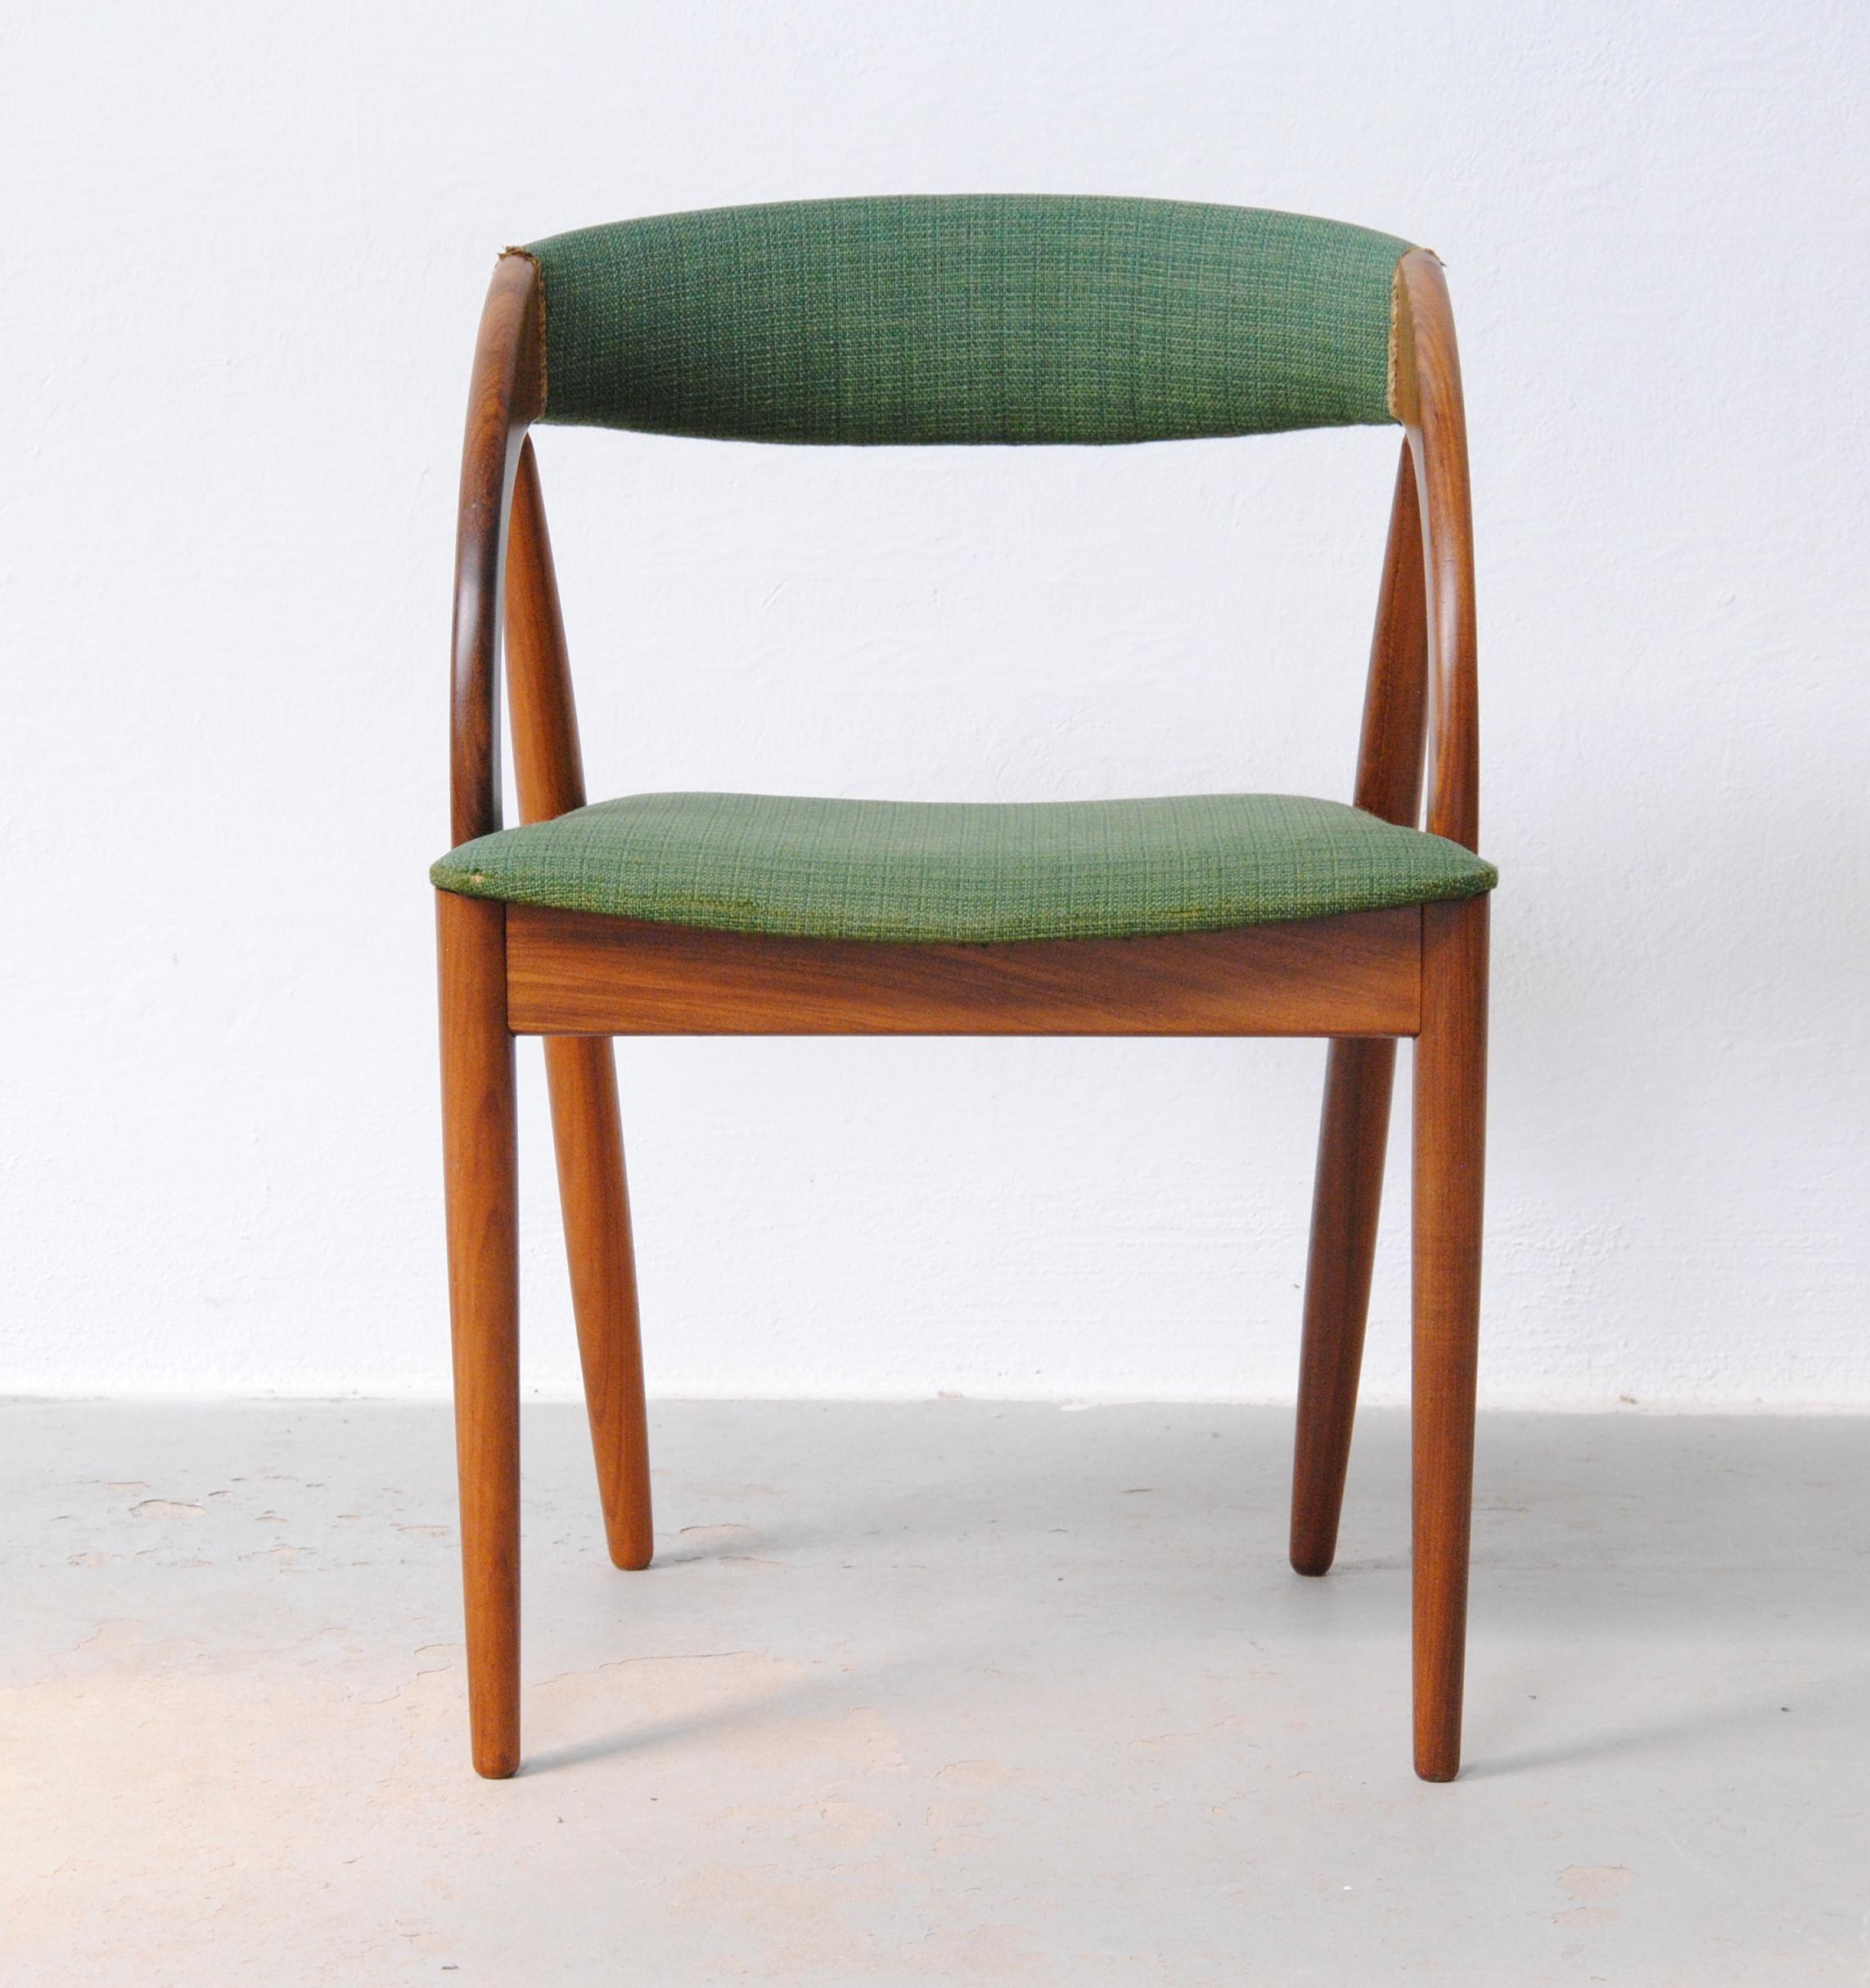 Chaise d'appoint en teck de forme organique conçue par le designer danois Johannes Andersen.

Cette chaise confortable est composée d'un solide cadre en teck soigneusement façonné avec de nombreuses formes organiques qui se fondent les unes dans les